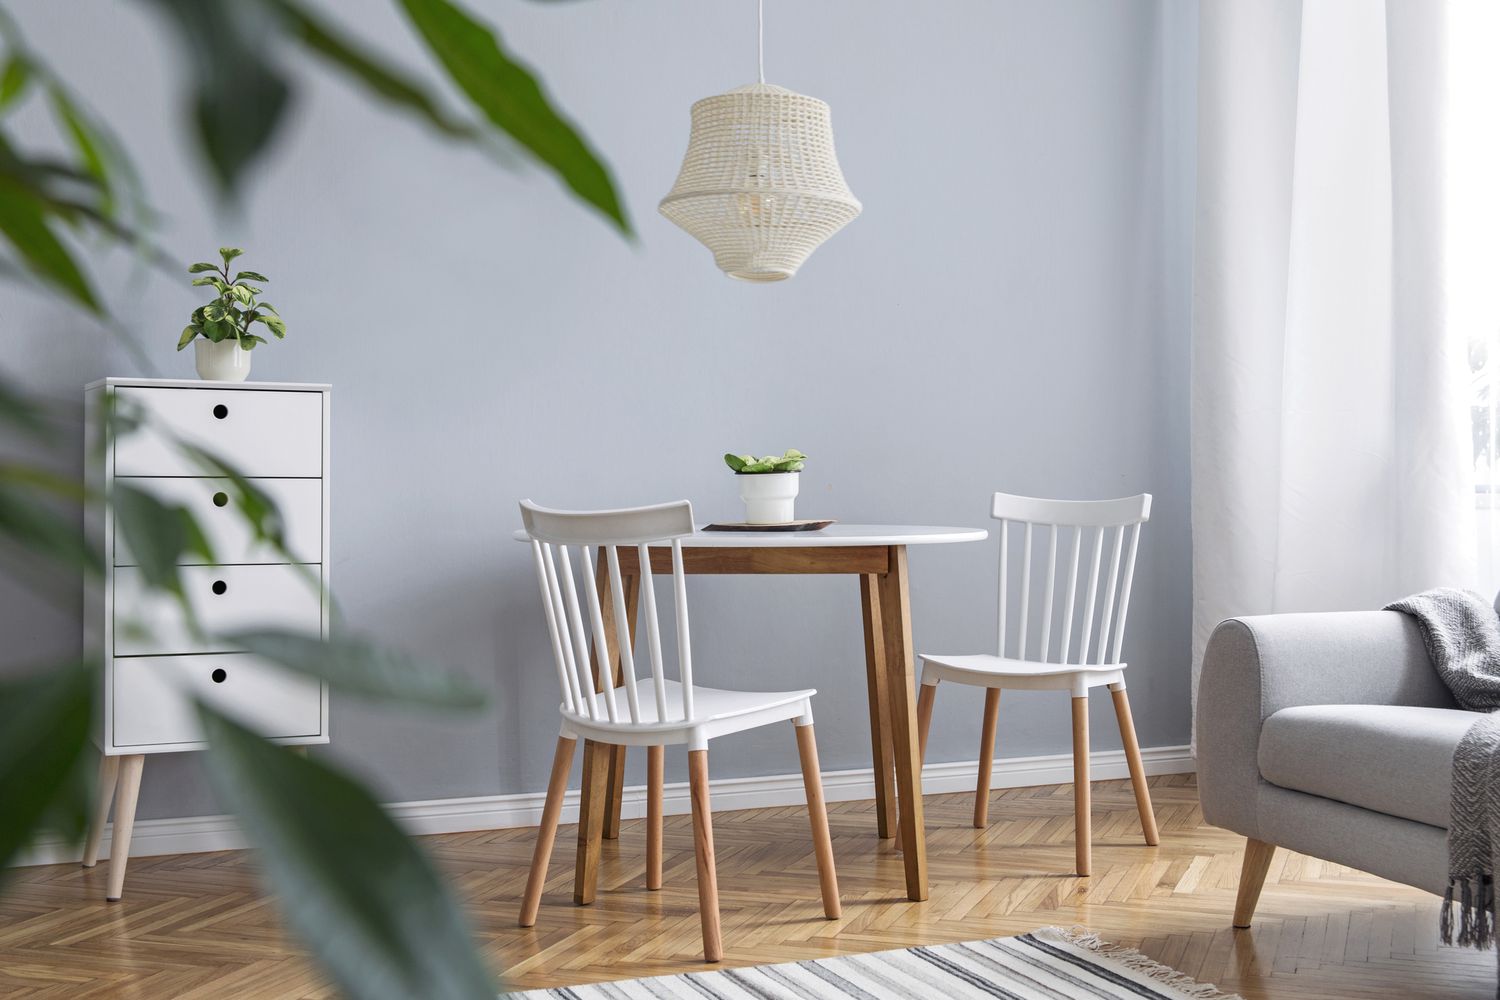 Moderne skandinavische Einrichtung des Wohnzimmers mit Designermöbeln, Familientisch, Sofa und Pflanzen Braunes Holzparkett und stilvoller Teppich. Schöne und minimalistische Wohnung.